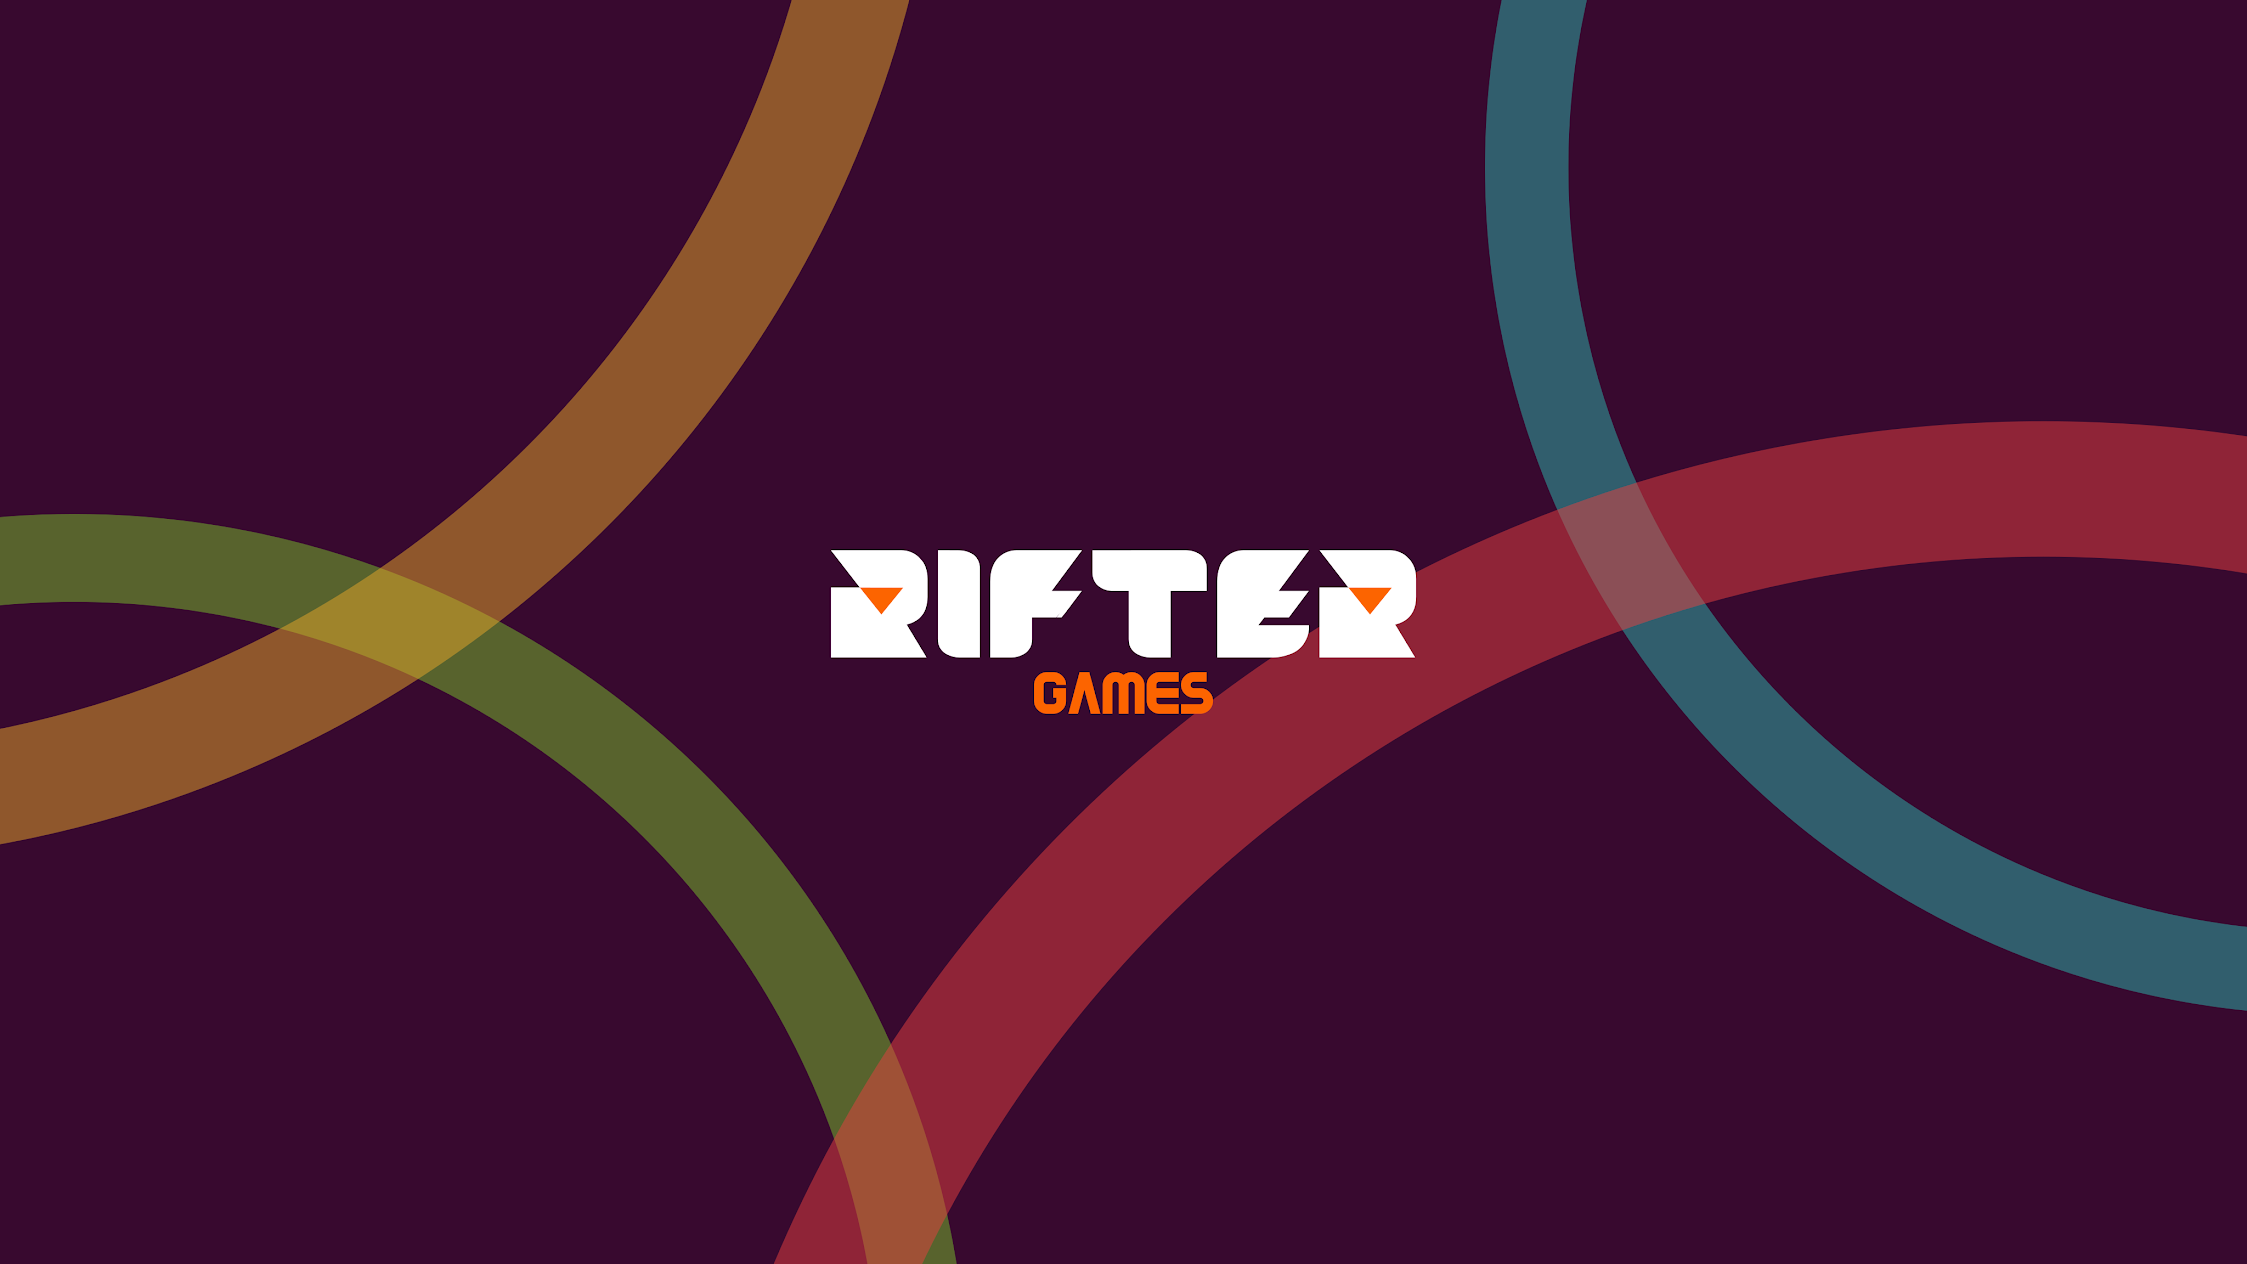 Rifter Games